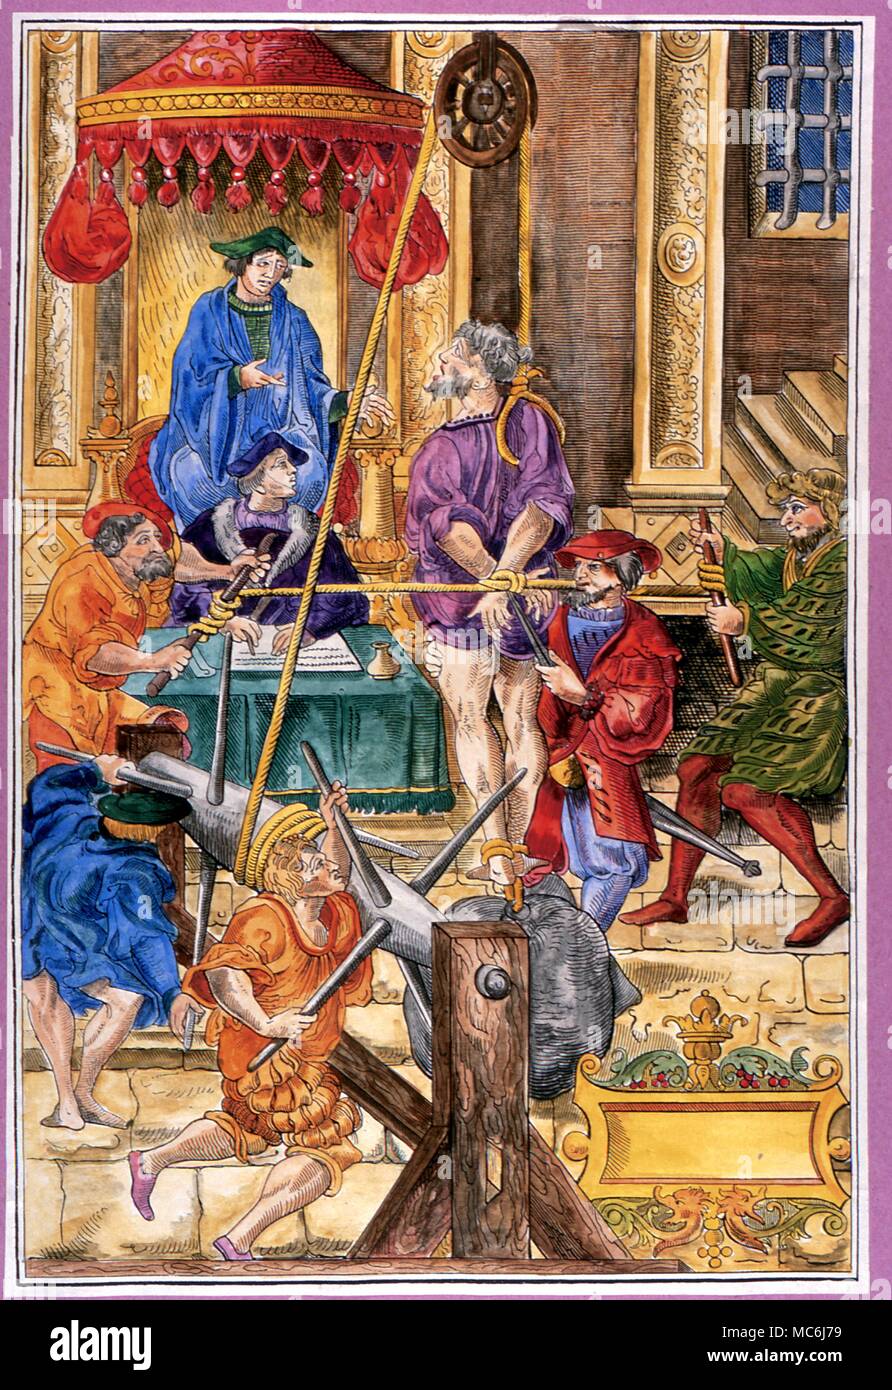 Folter - Estrapade, Instrument der Folter besonders durch die Inquisition verwendet. Holzschnitt 1541 Stockfoto